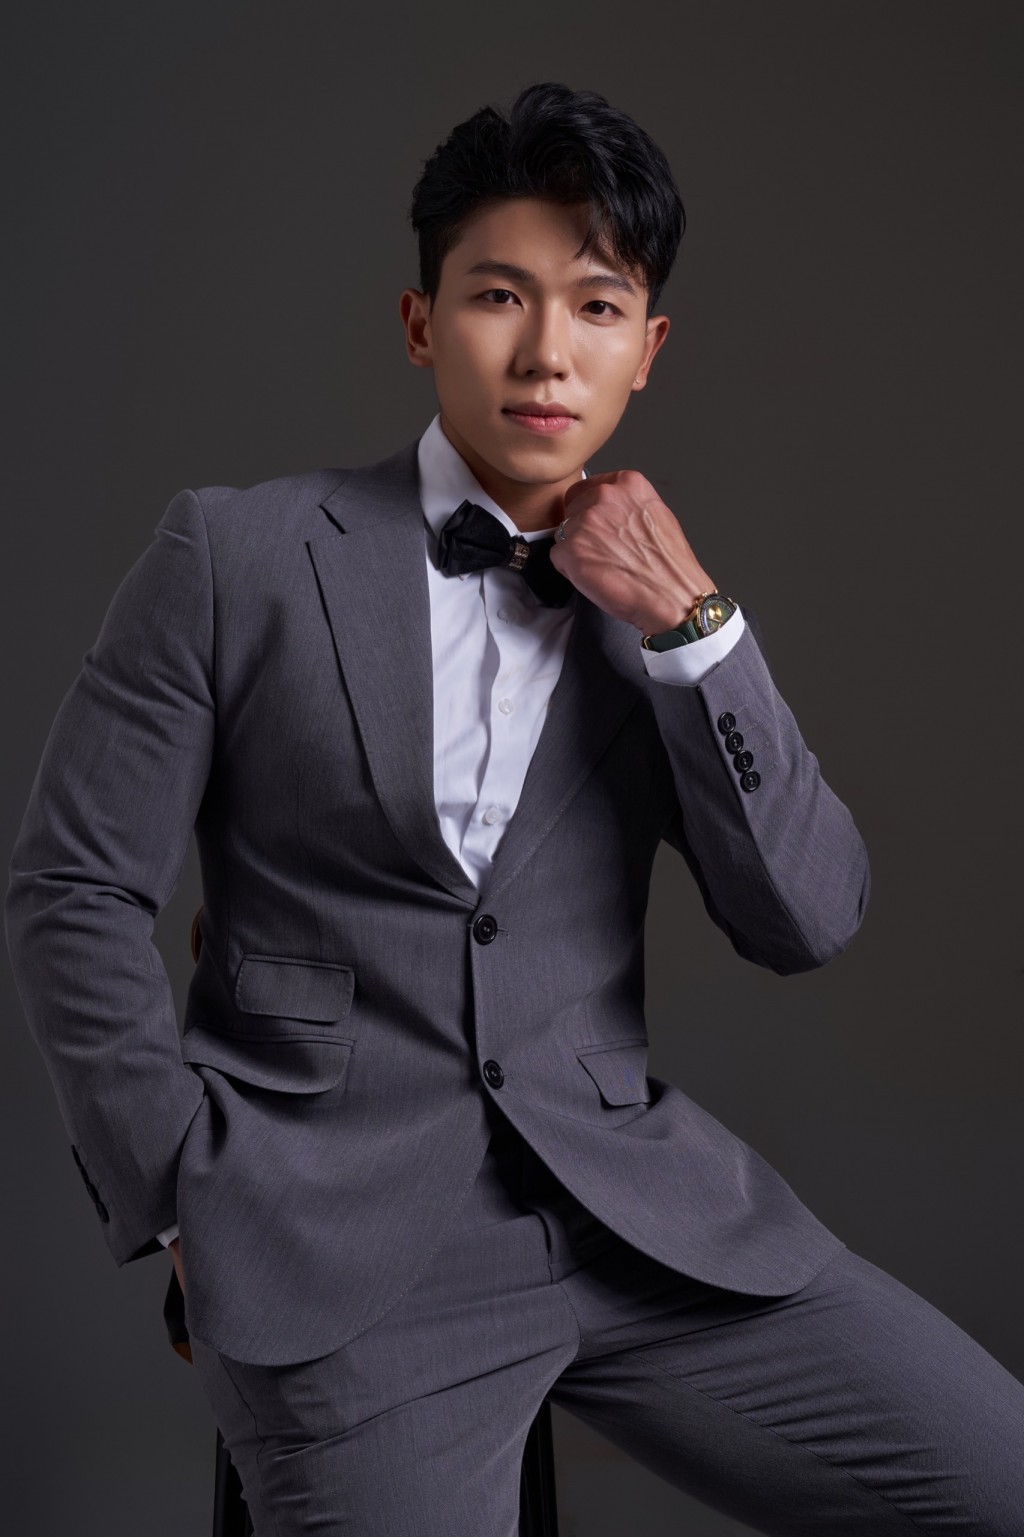 Nguyễn Hoàng Tùng giành ngôi Mister Grand Asia & Pacific 2023